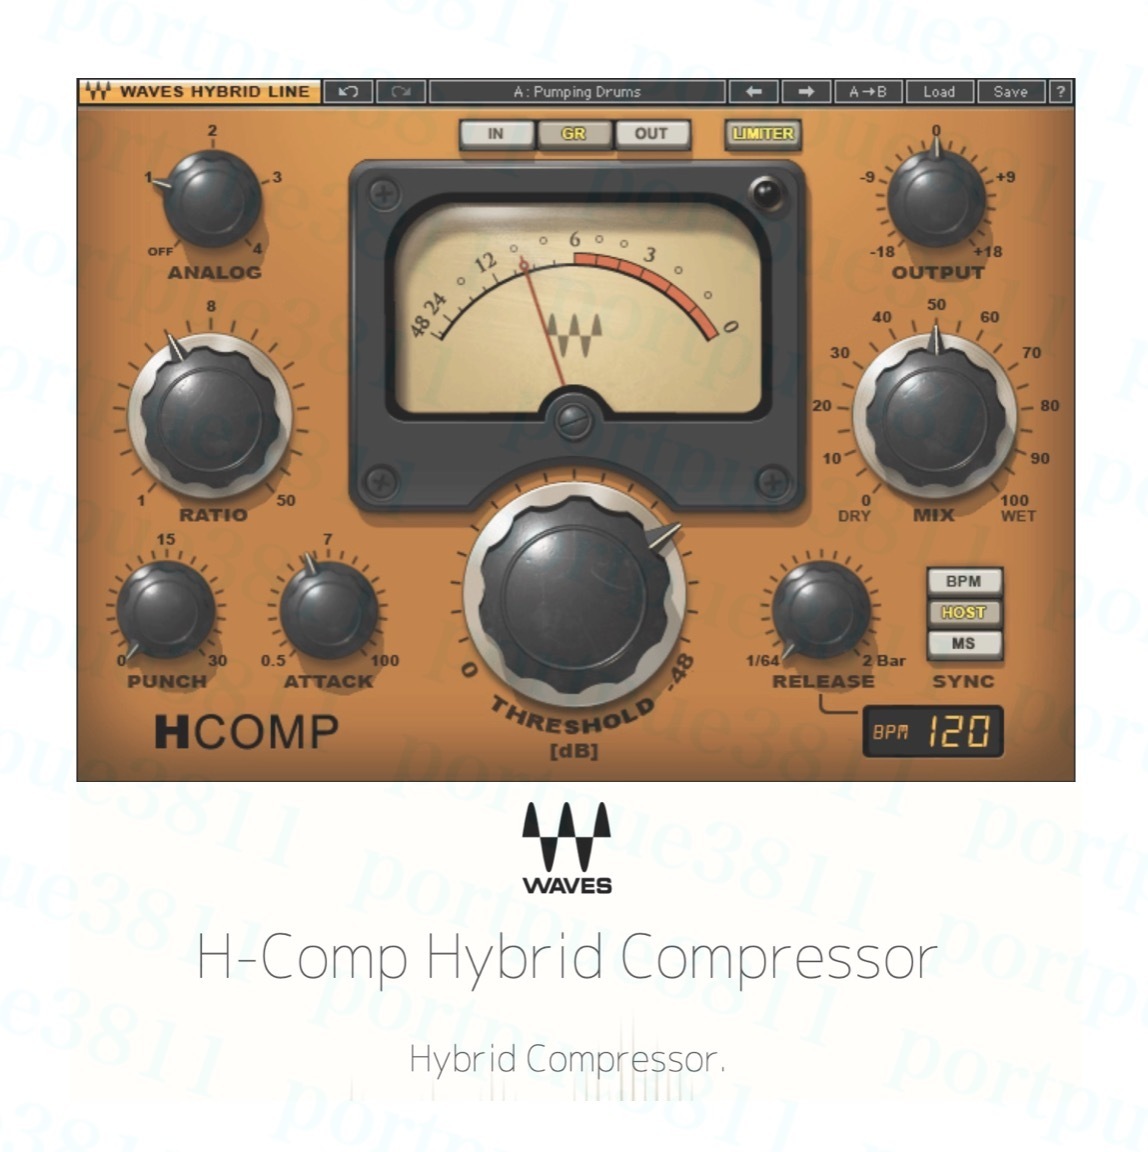  ограниченное количество стандартный товар WAVES dbx 160 compressor / H-Comp Hybrid Compressor комплект загрузка версия не использовался Mac/Win